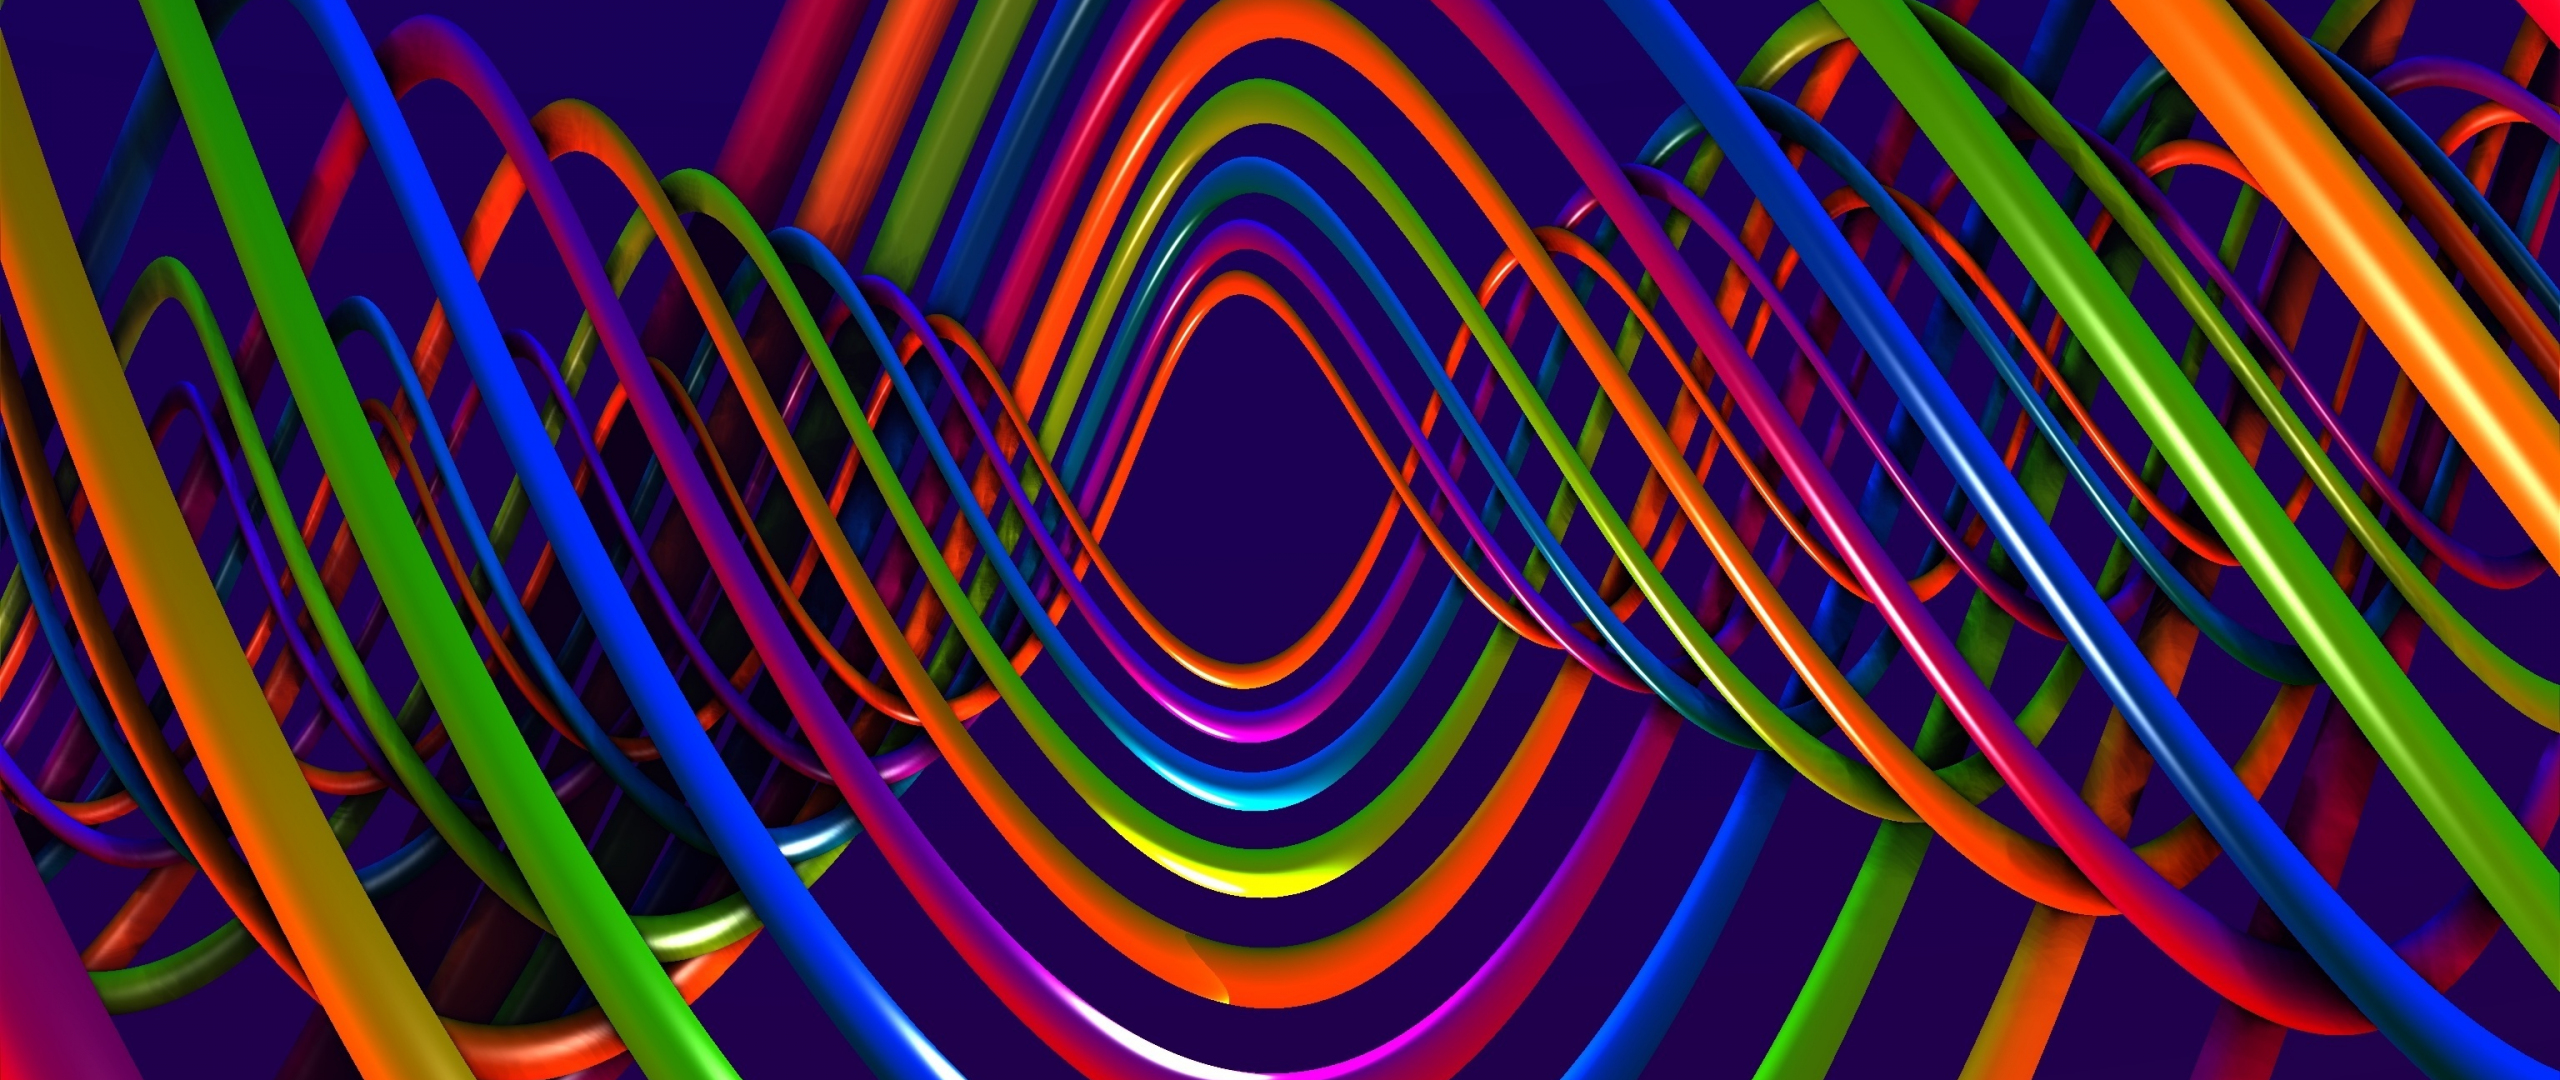 Download wallpaper 2560x1080 spiral, colorful plexus, multicolored ...